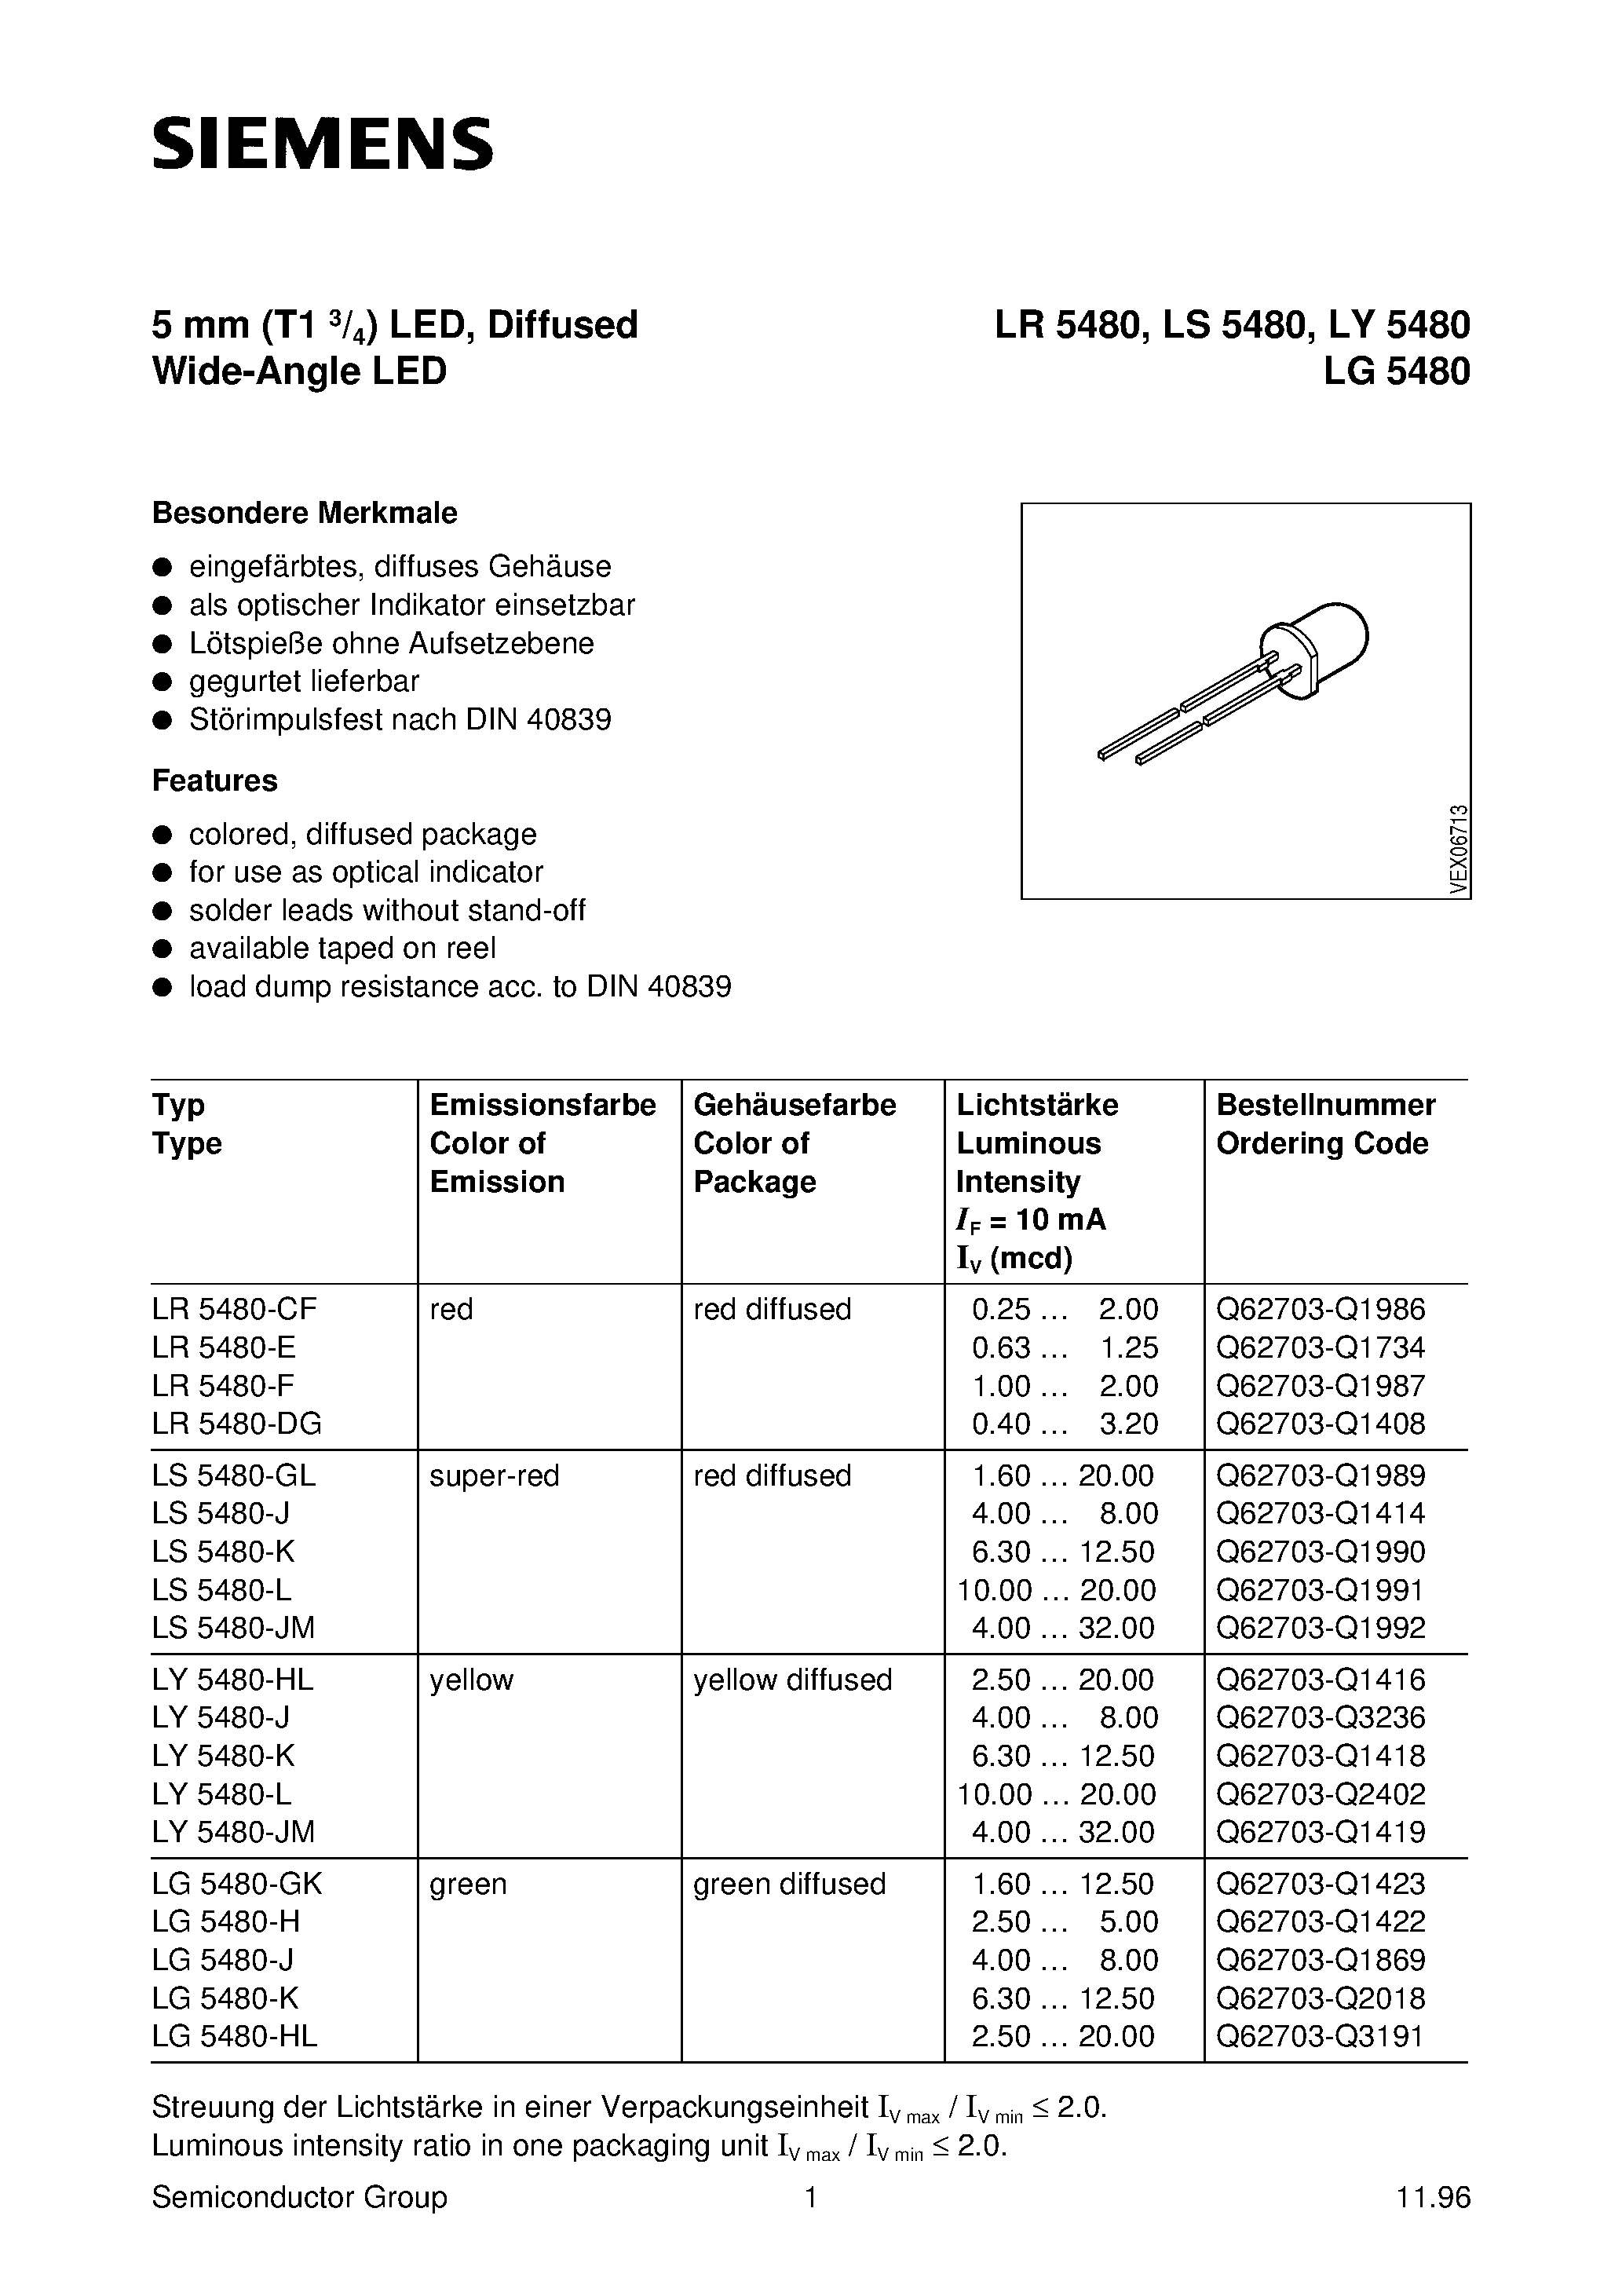 Даташит LY5480-J - T1 (5mm) LED LAMP страница 1